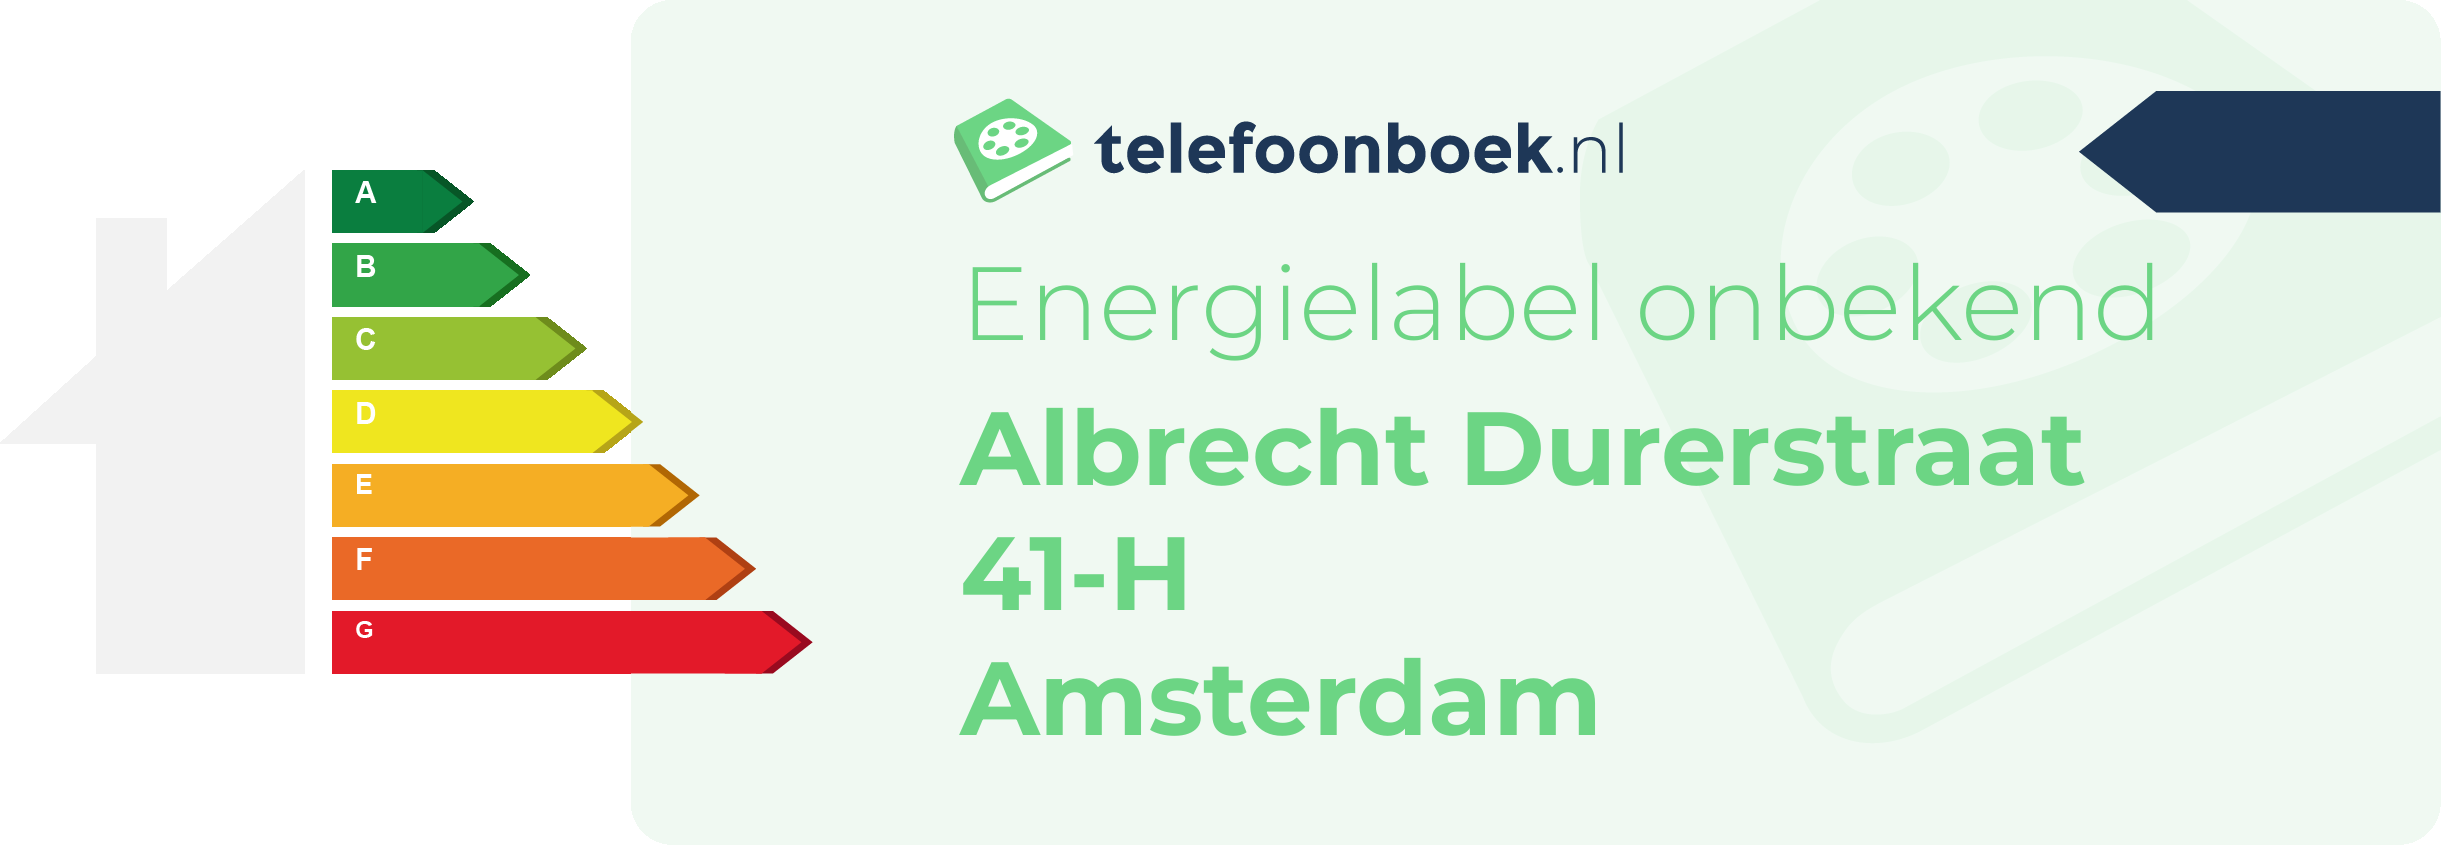 Energielabel Albrecht Durerstraat 41-H Amsterdam